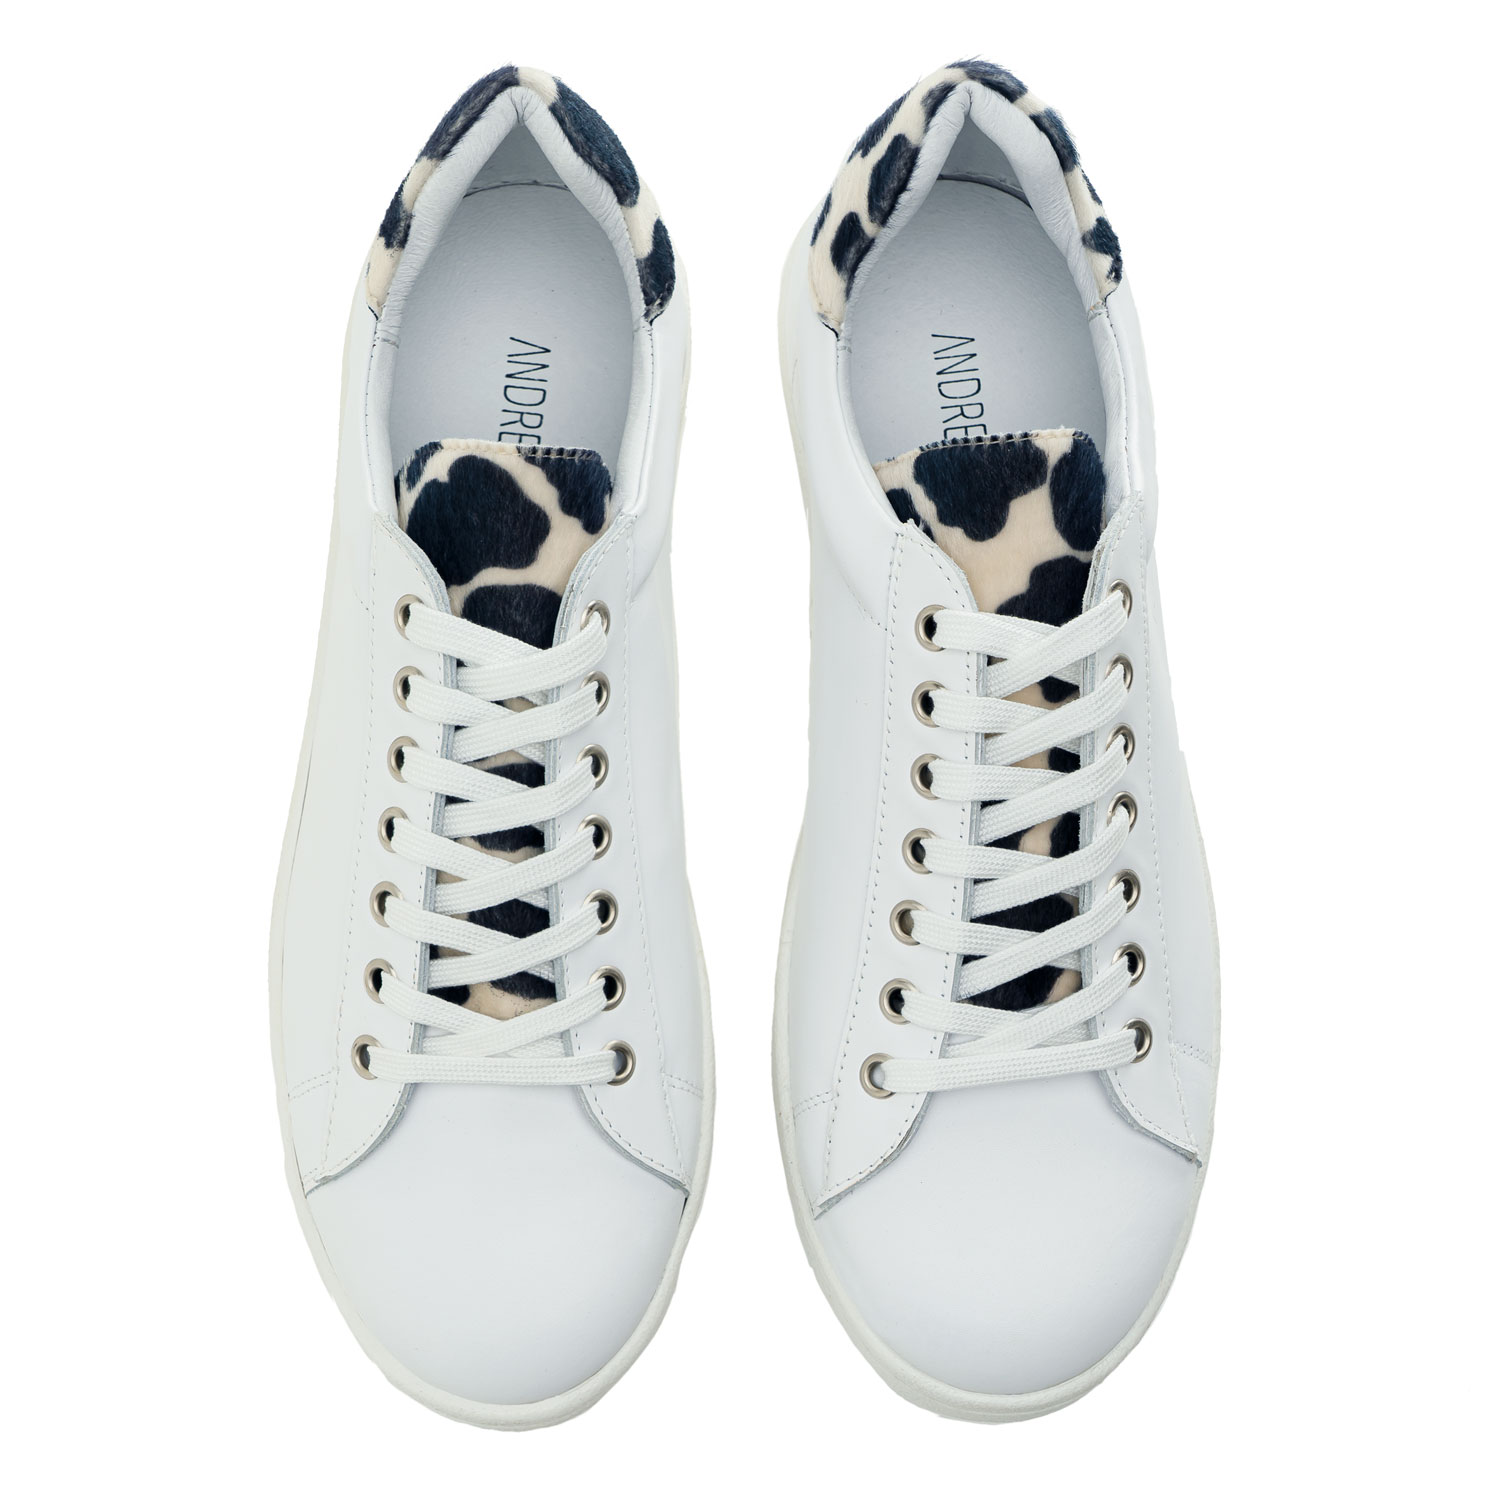 Sneaker aus hochwertigem Leder in weiß mit Kuhfellmuster - MADE in SPAIN 